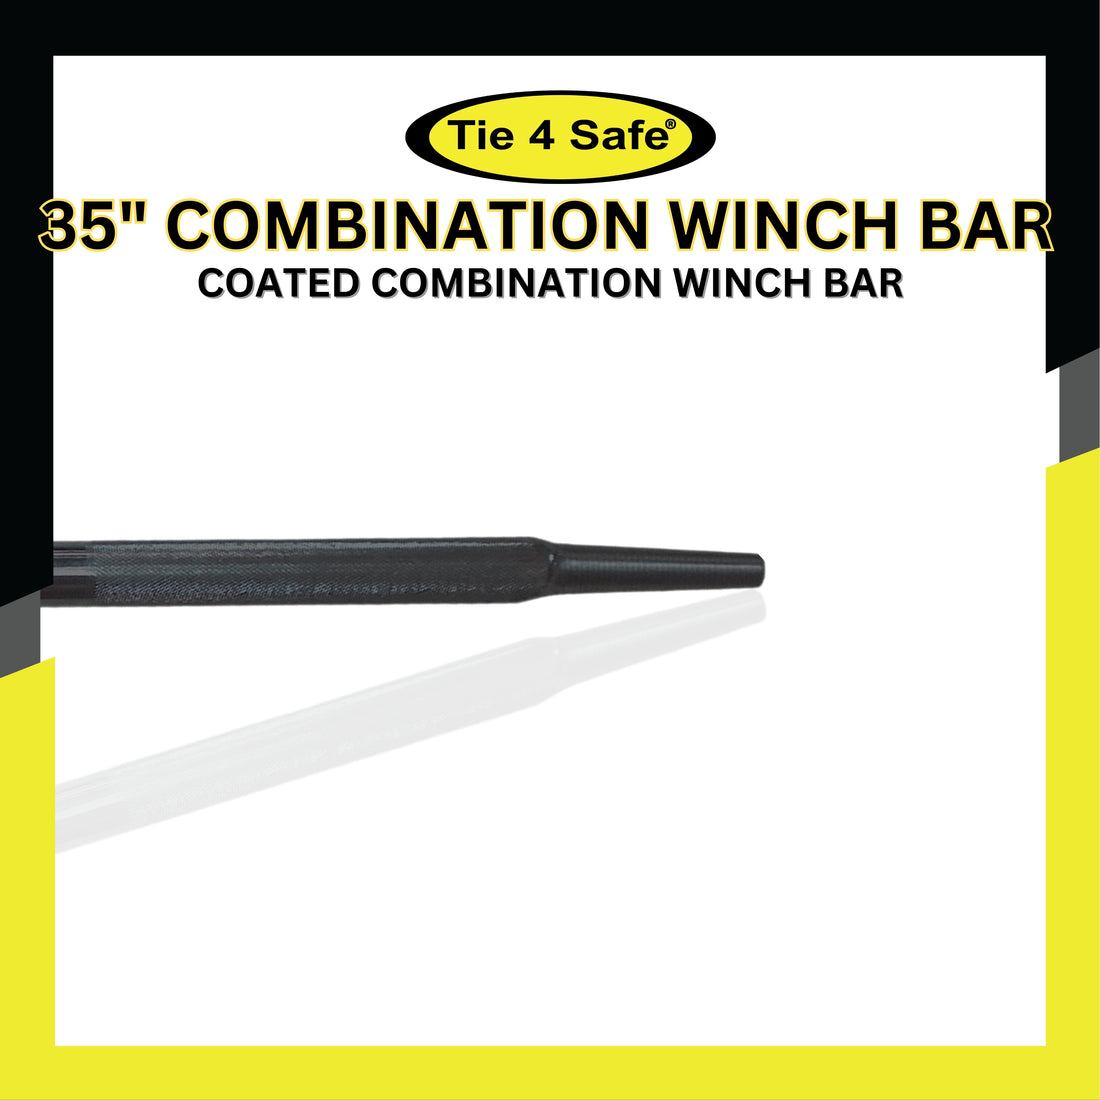 35" Combination Winch Bar